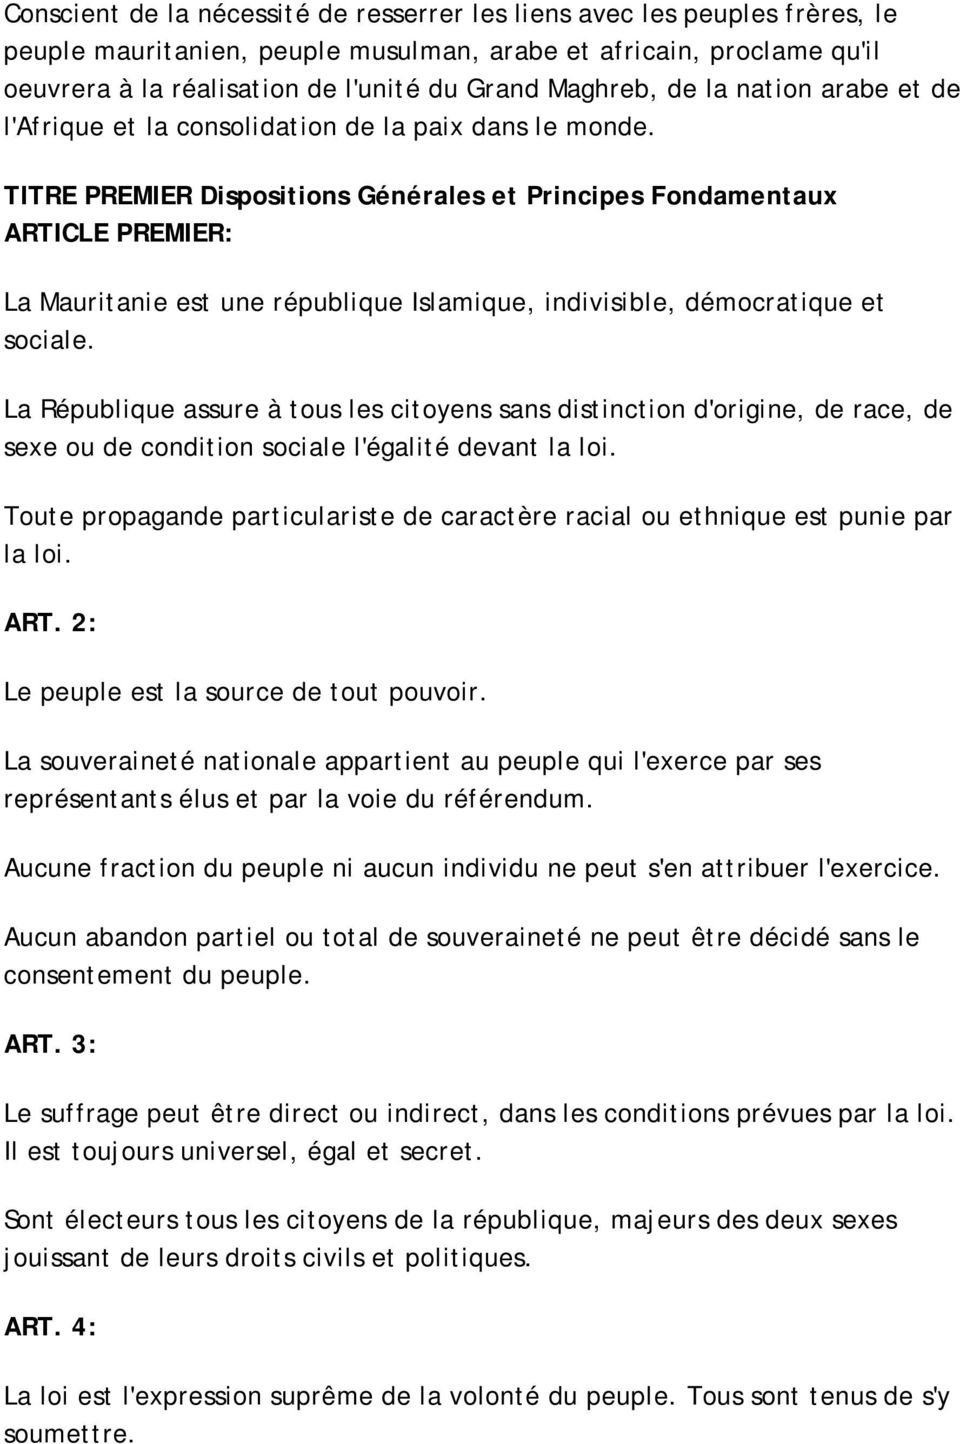 TITRE PREMIER Dispositions Générales et Principes Fondamentaux ARTICLE PREMIER: La Mauritanie est une république Islamique, indivisible, démocratique et sociale.